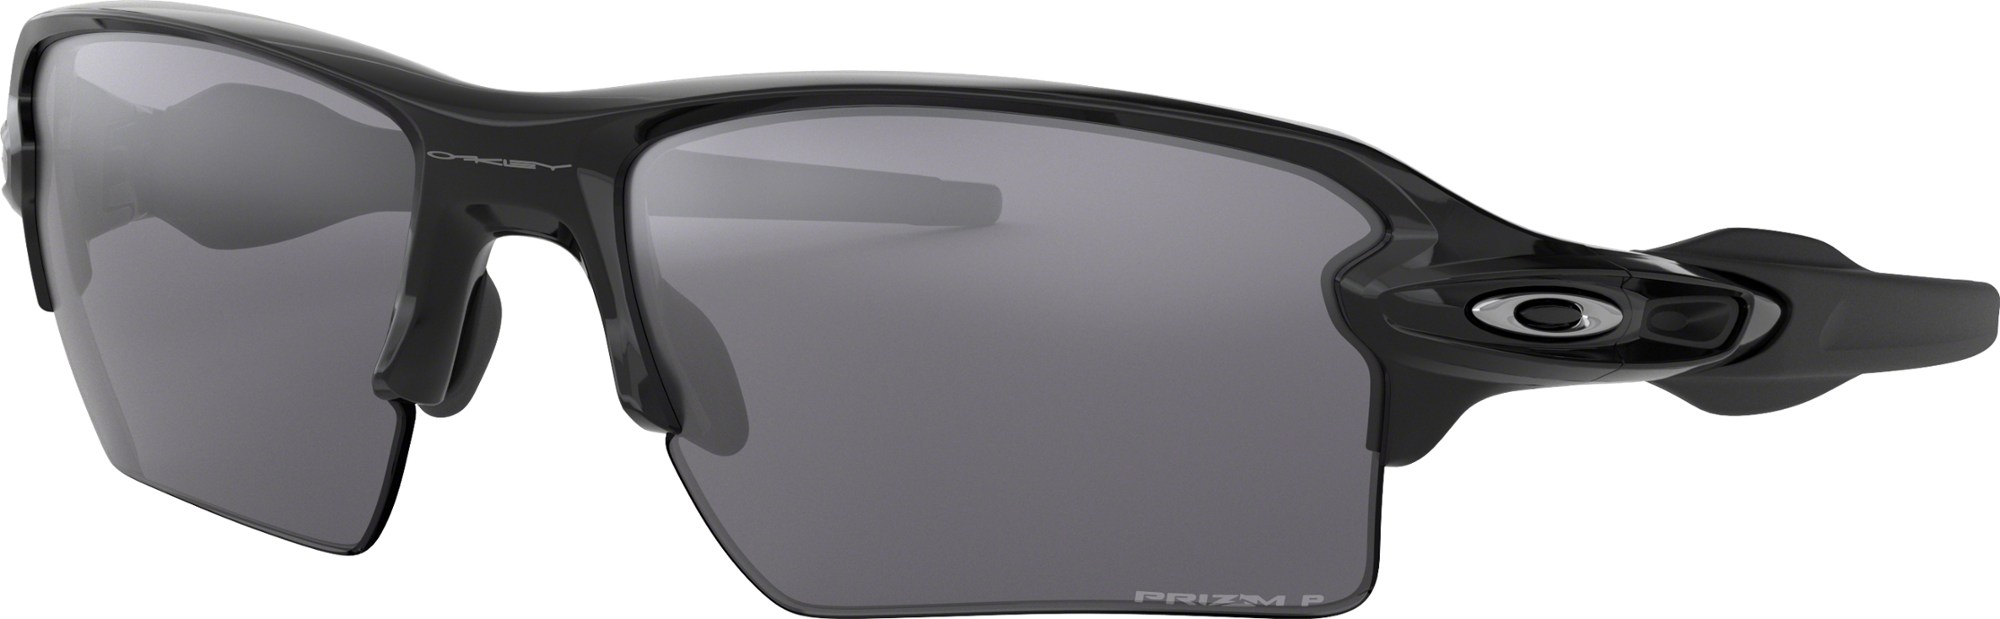 Солнцезащитные очки Flak 2.0 XL Oakley, черный oowlit резиновый набор для солнцезащитных очков oakley flak 2 0 xl oo9188